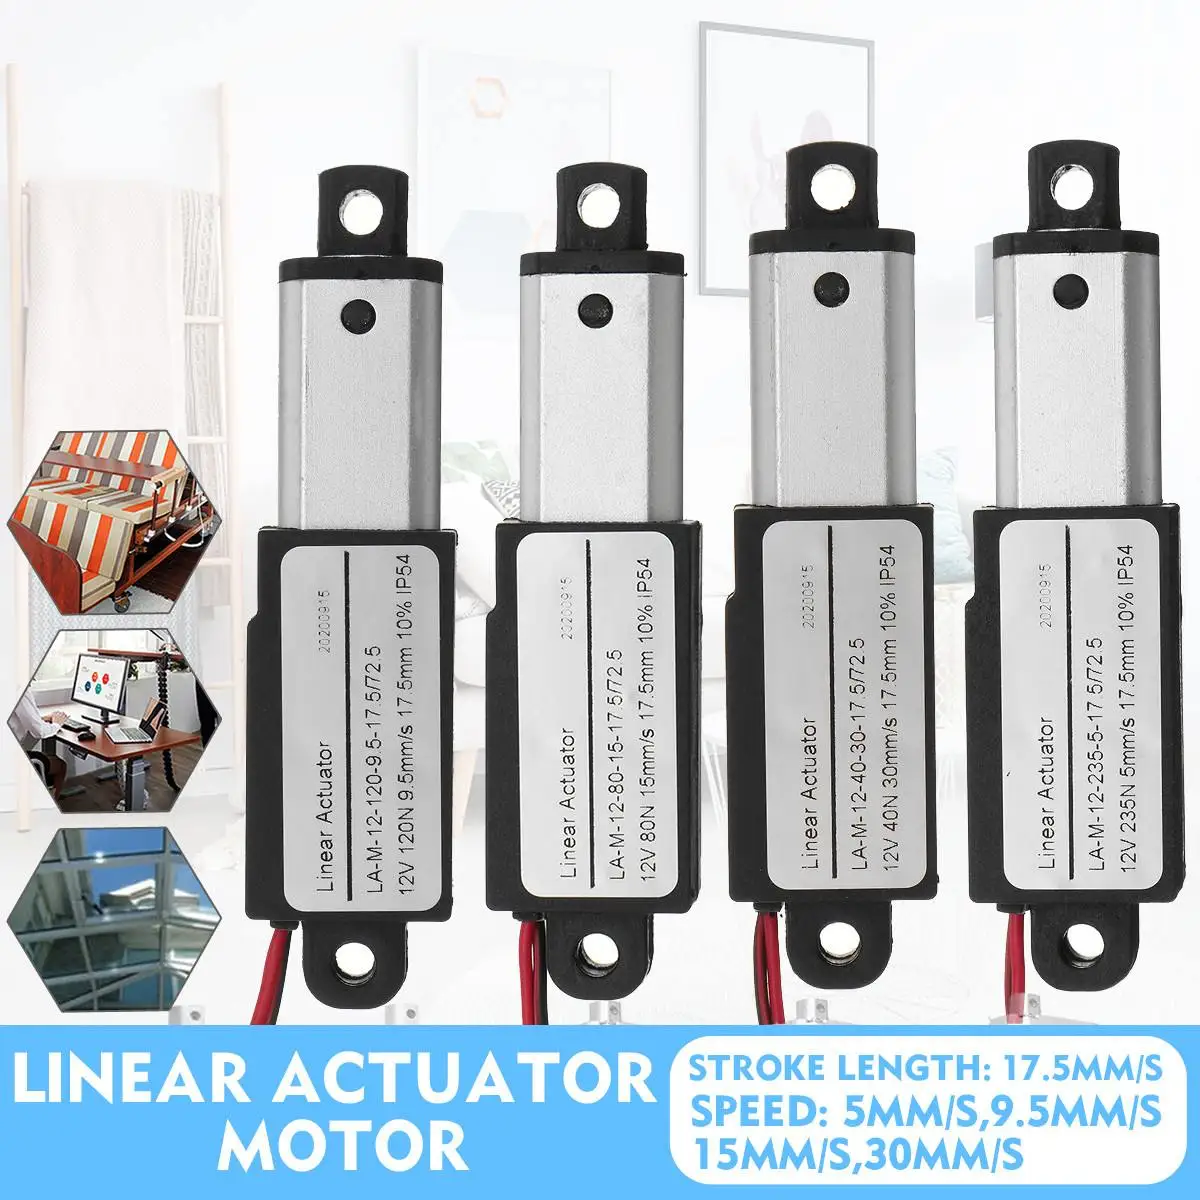 12v Linear Actuator, Linear Actuator 6v, Actuator Motor